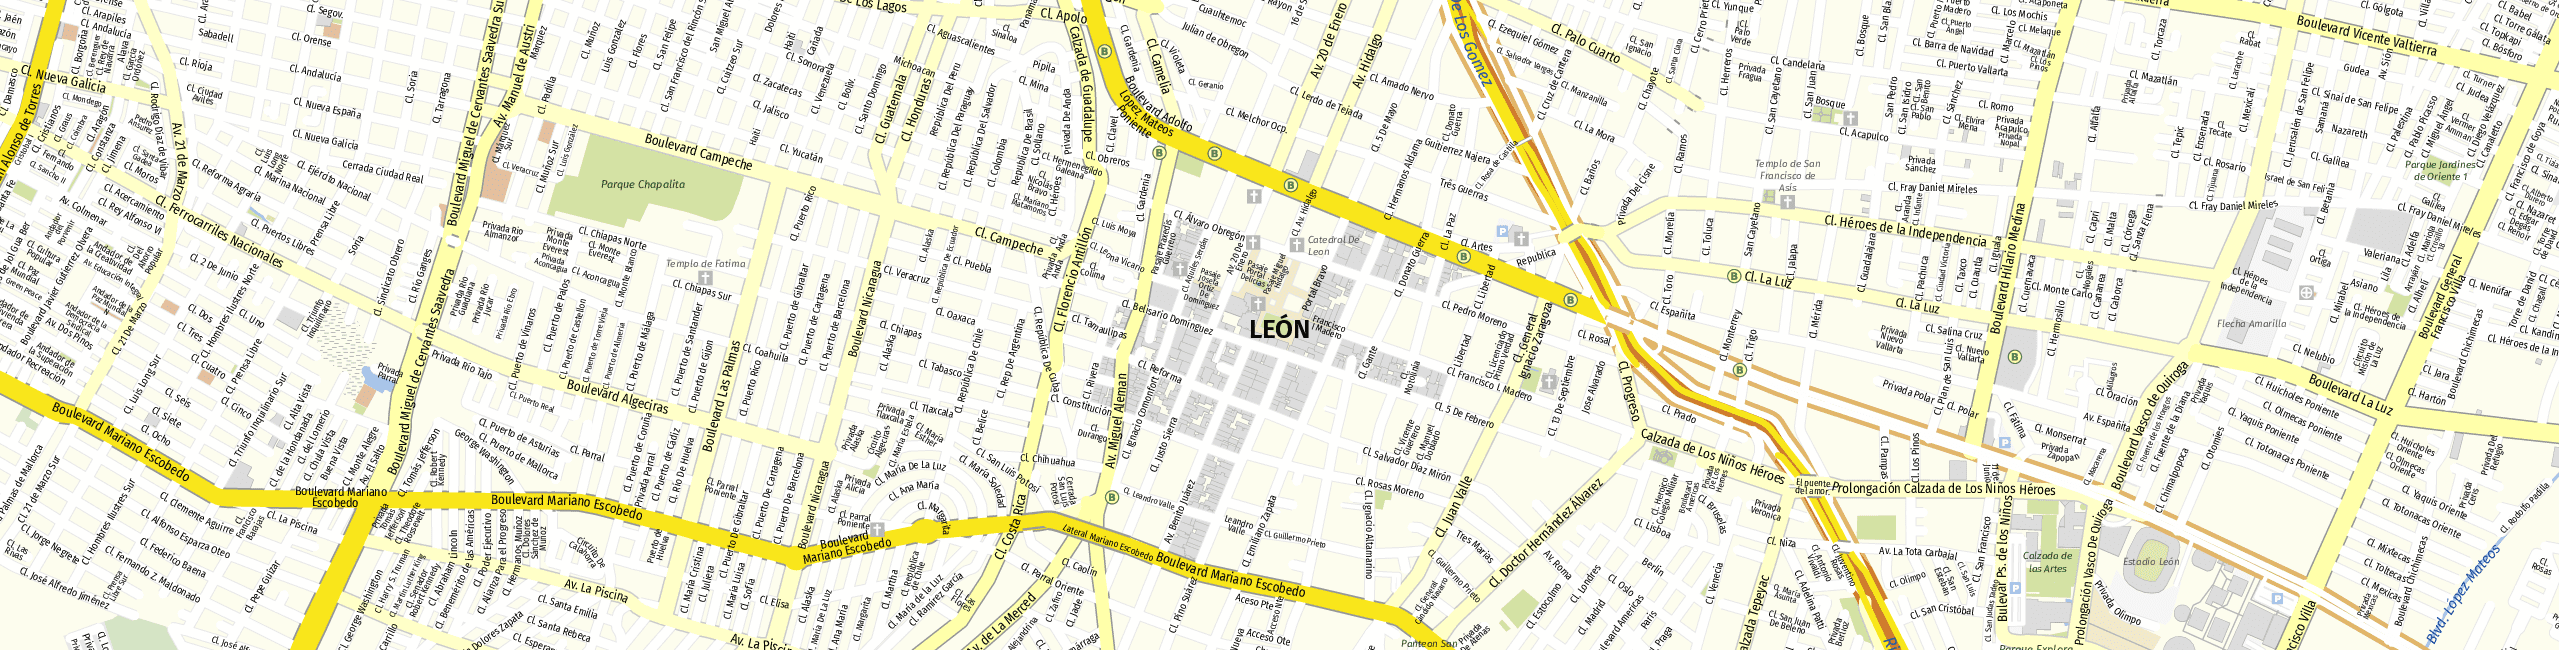 Stadtplan León zum Downloaden.